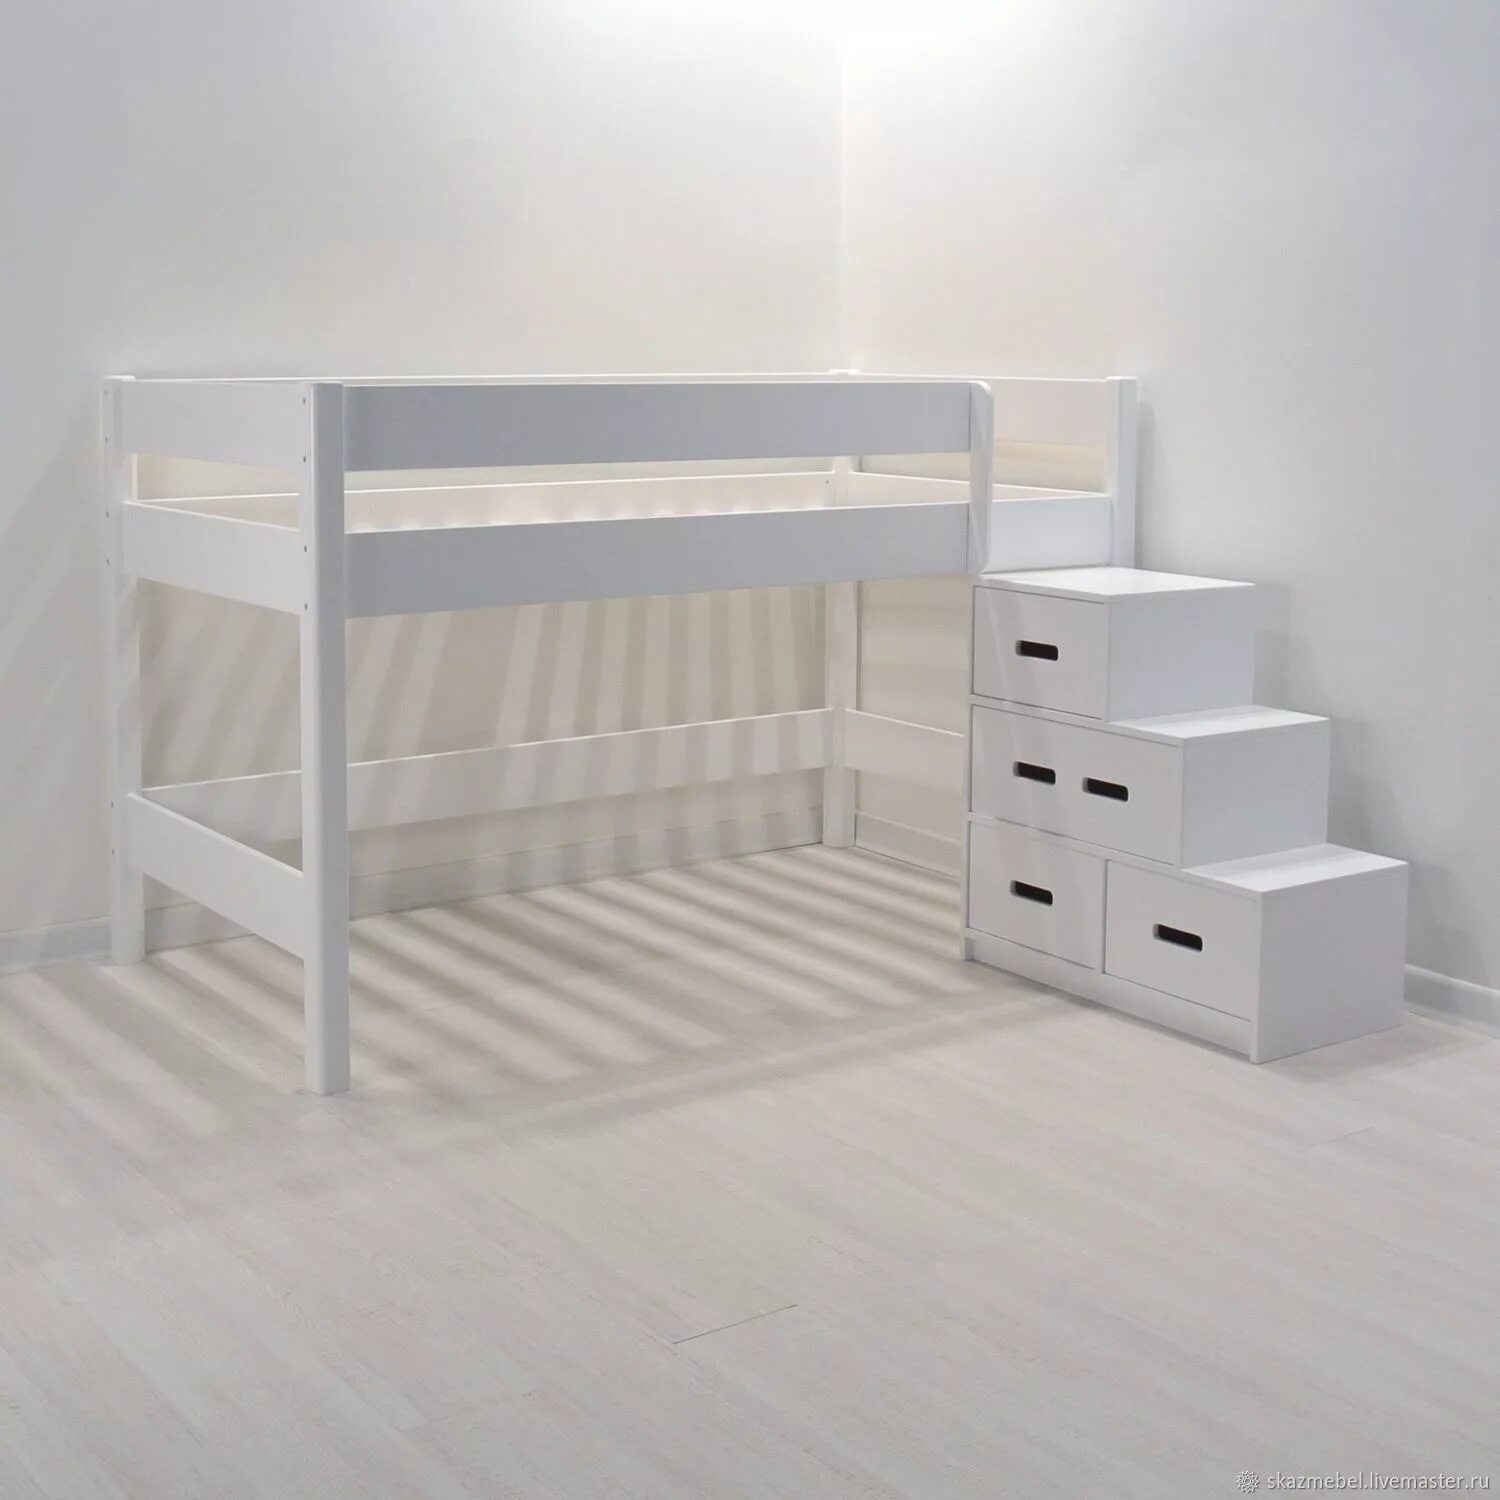 Купить кровать лестница. Кровать чердак 160х80. Кровать чердак 160х70. Кровать чердак хофф. Детская кровать чердак 160х80.